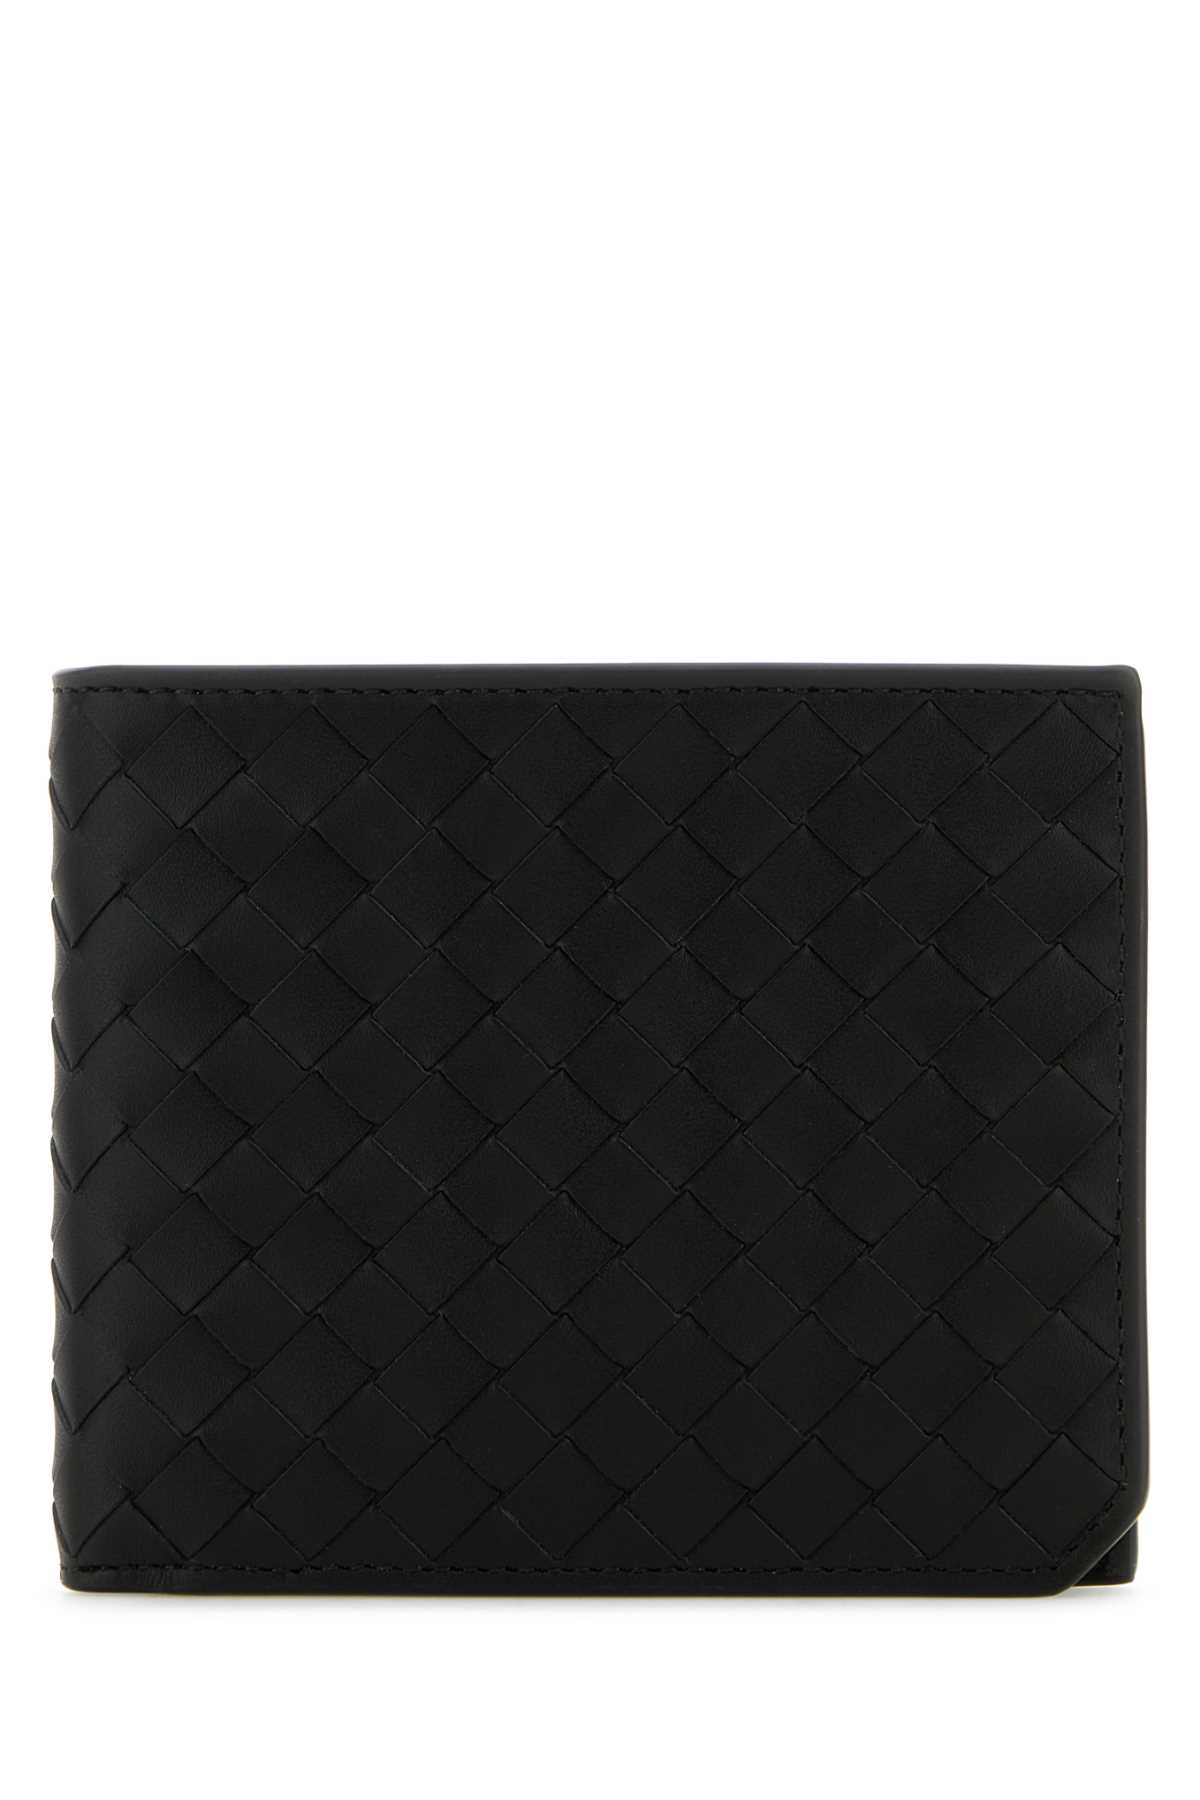 Black Leather Intrecciato Wallet